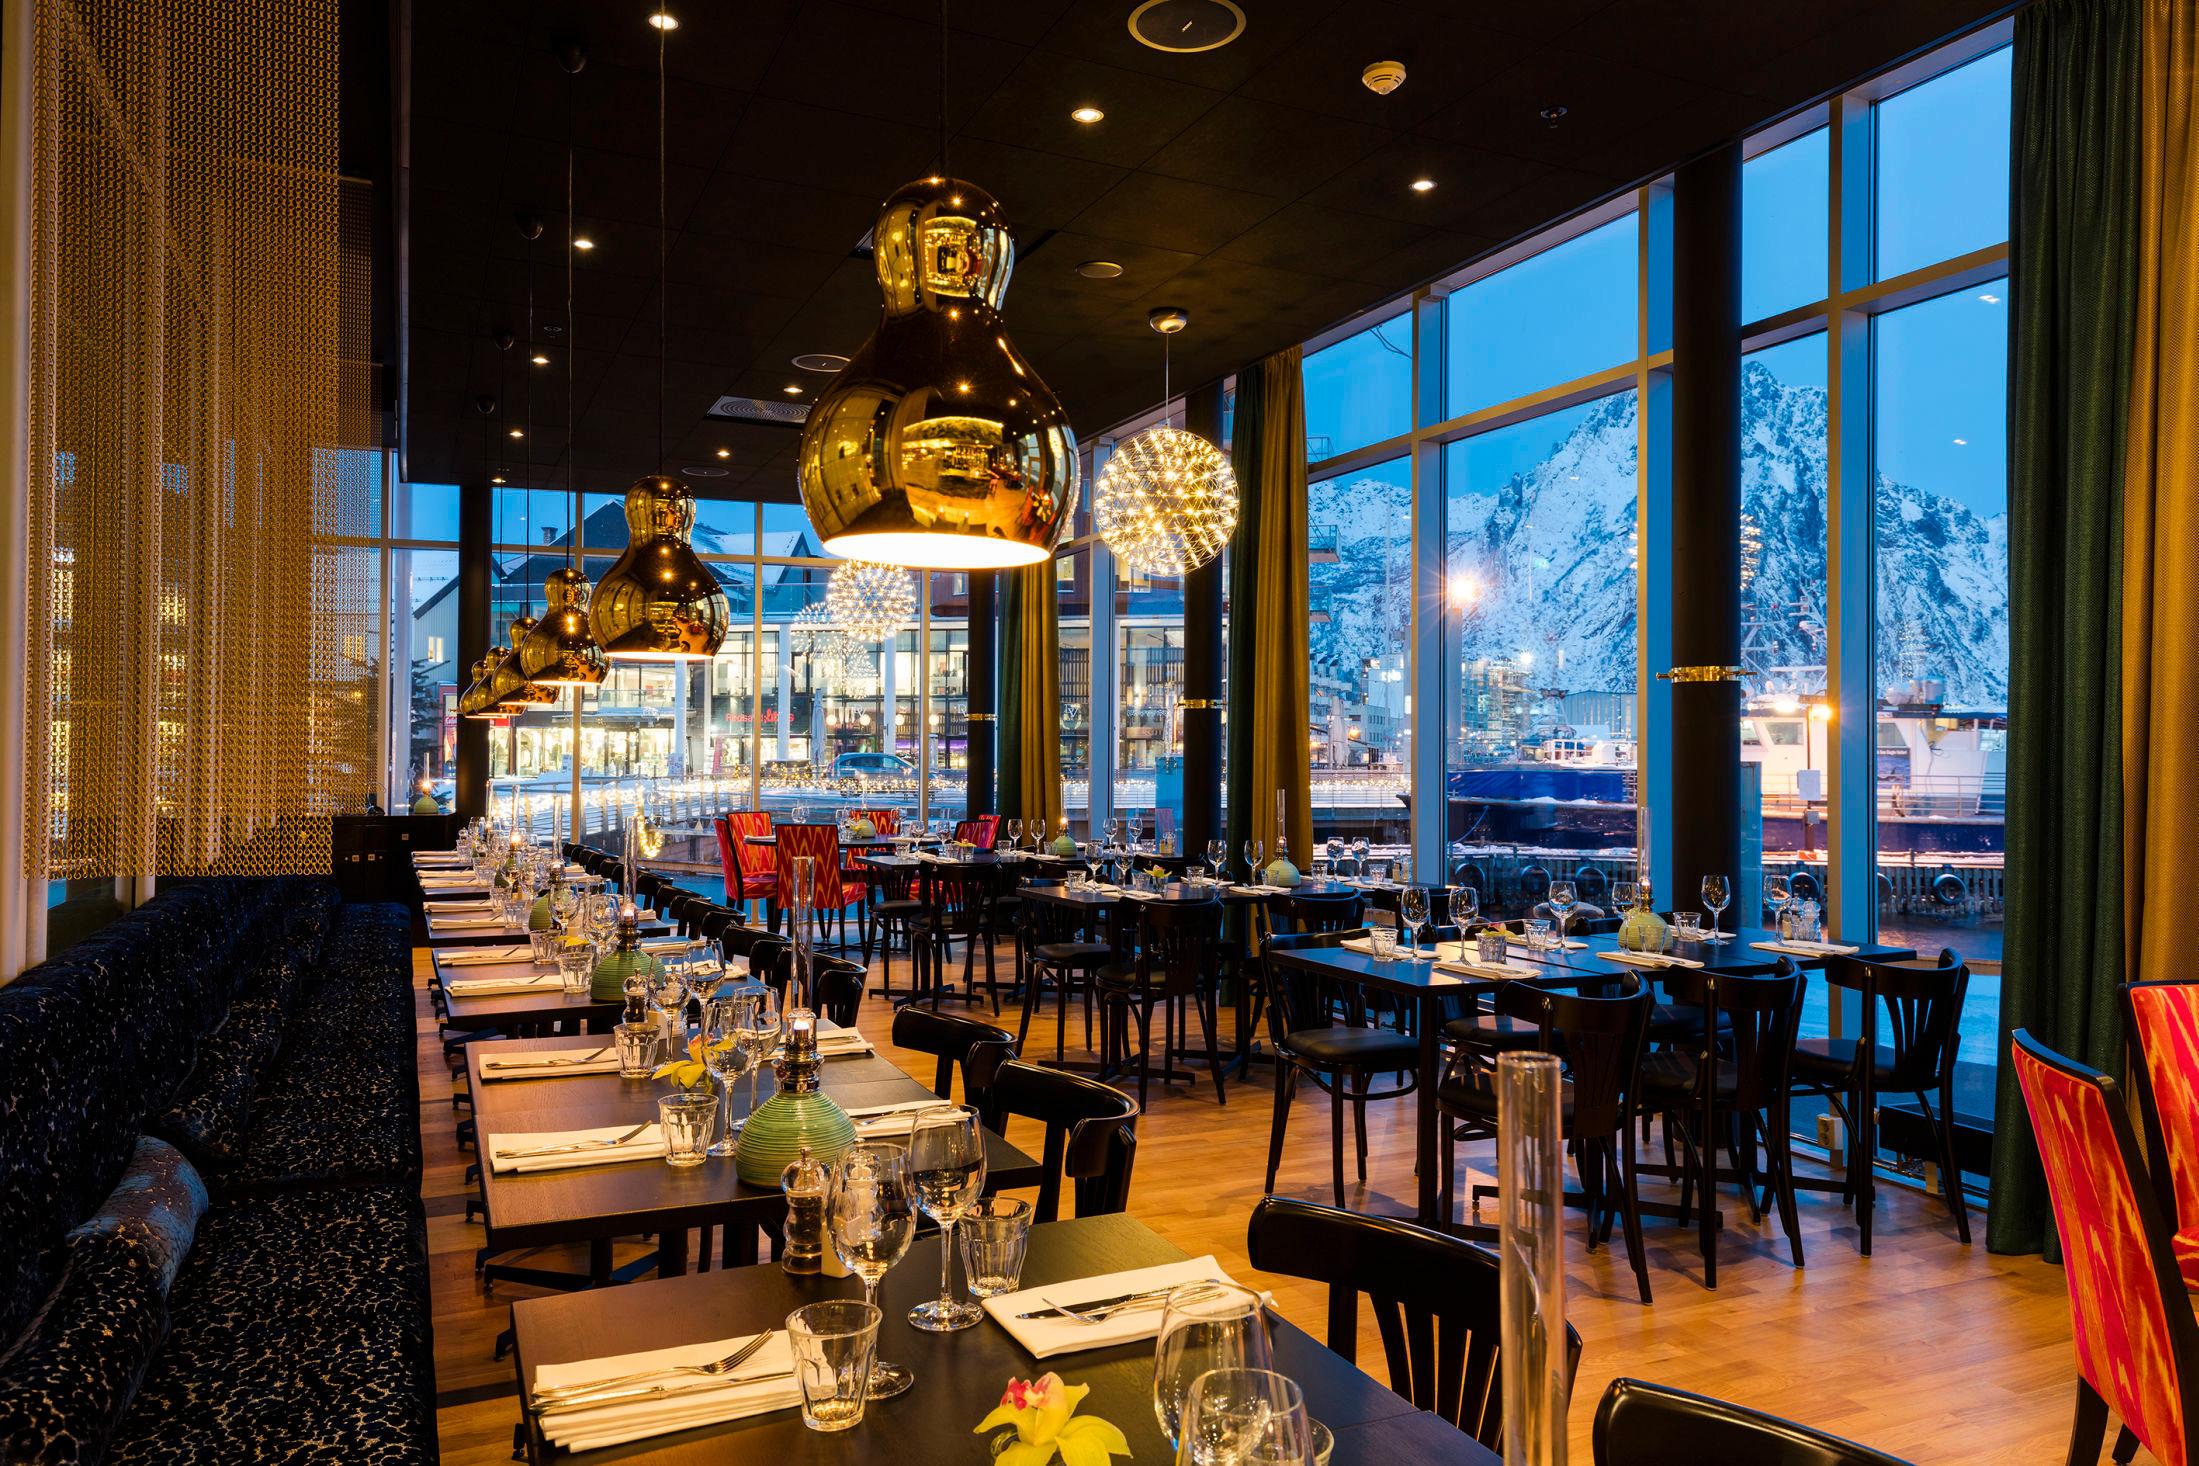 BREAKFAST WITH A VIEW : Frokostsalen på Thon Hotel Lofoten byr på godt for magen - og litt å titte på. Foto: Thon Hotels.